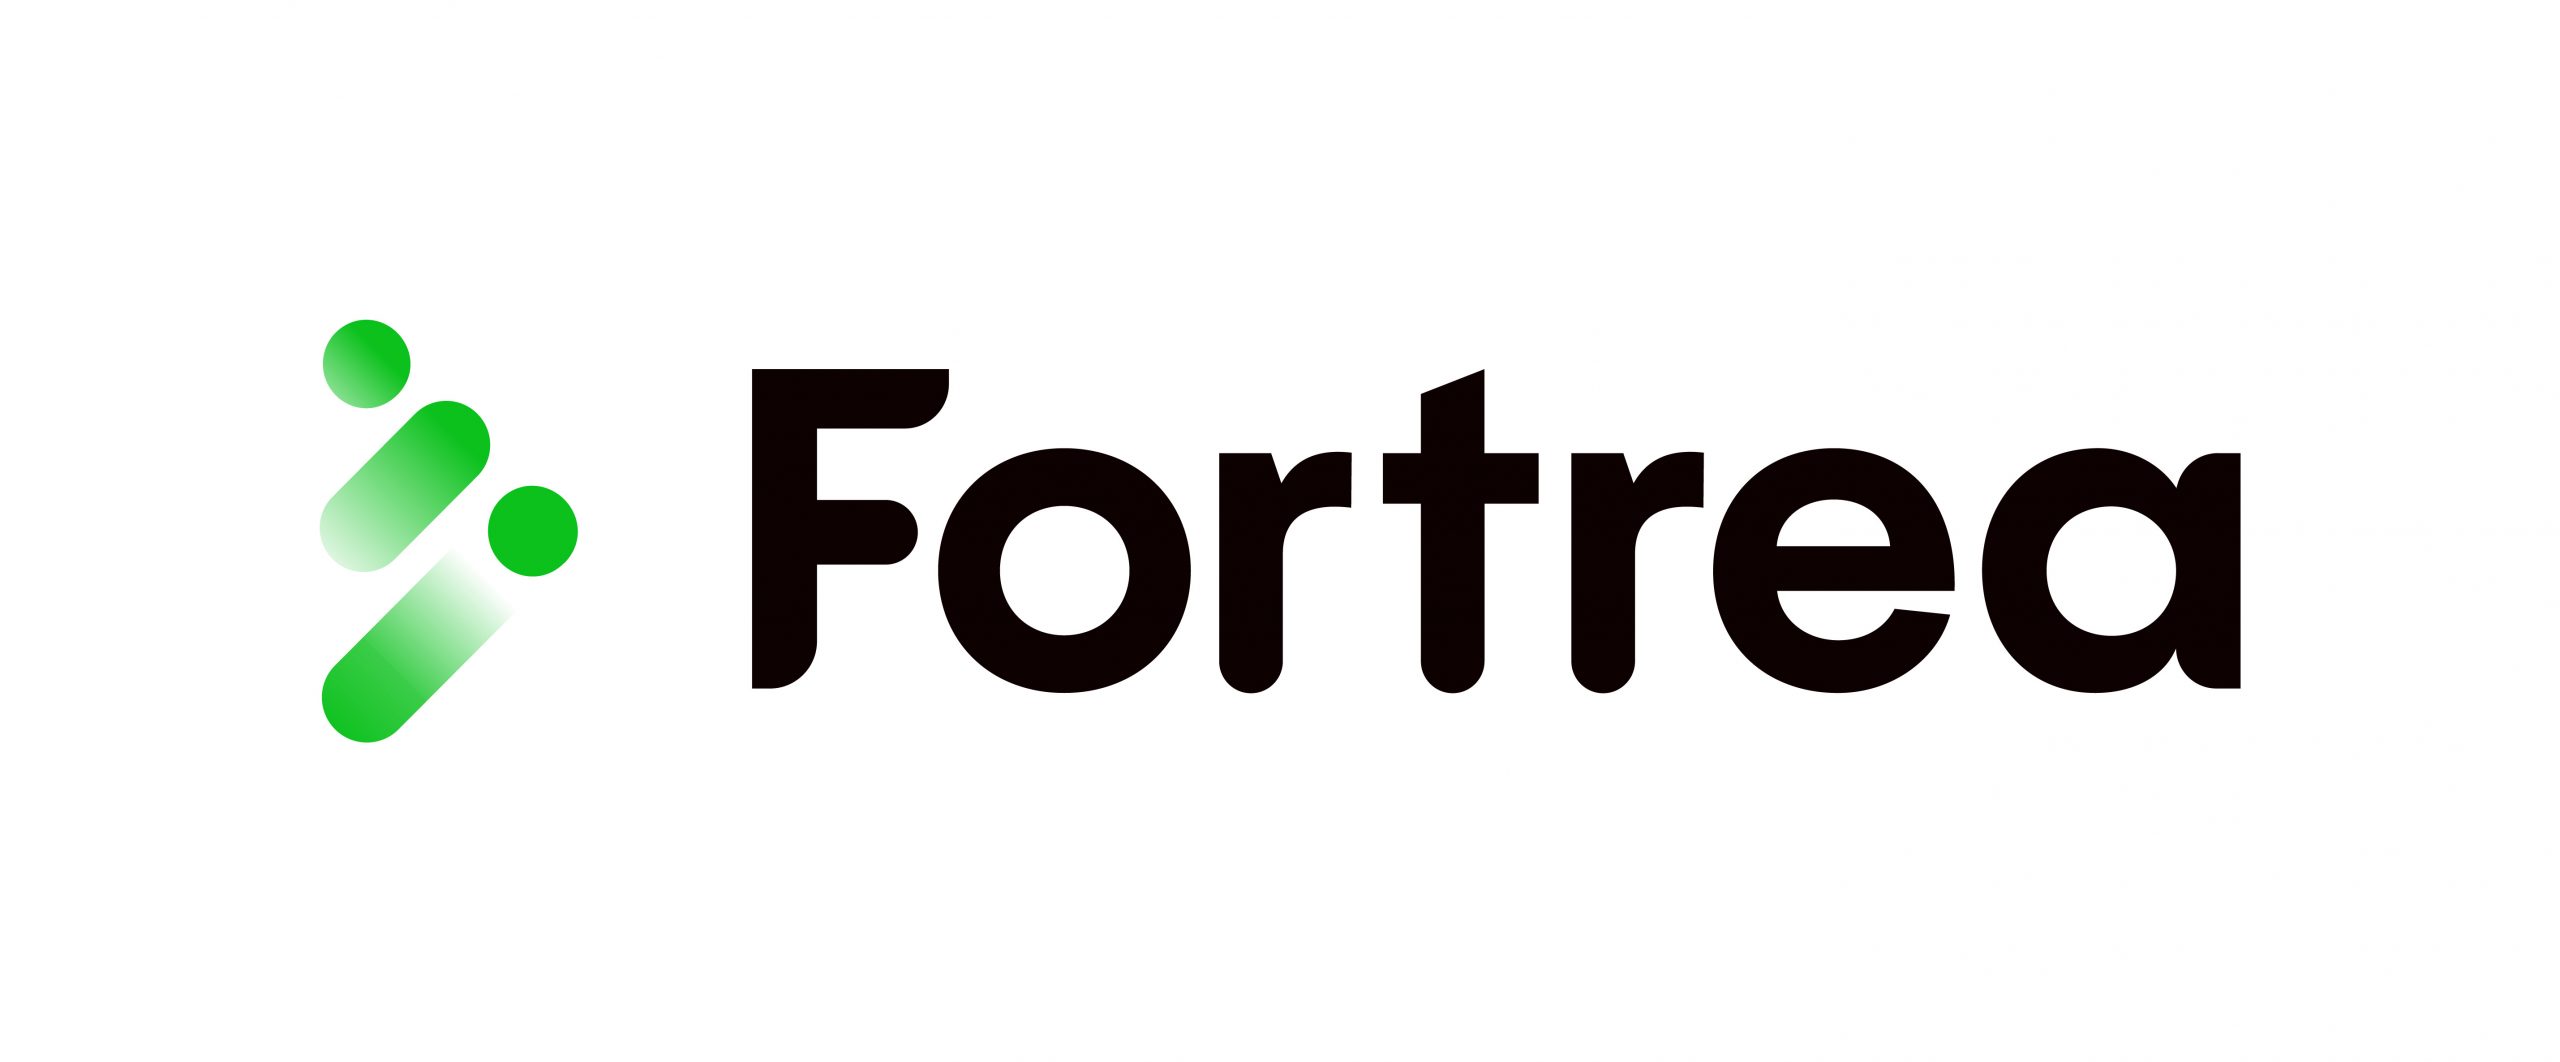 Fortrea_Logo__Green-Black